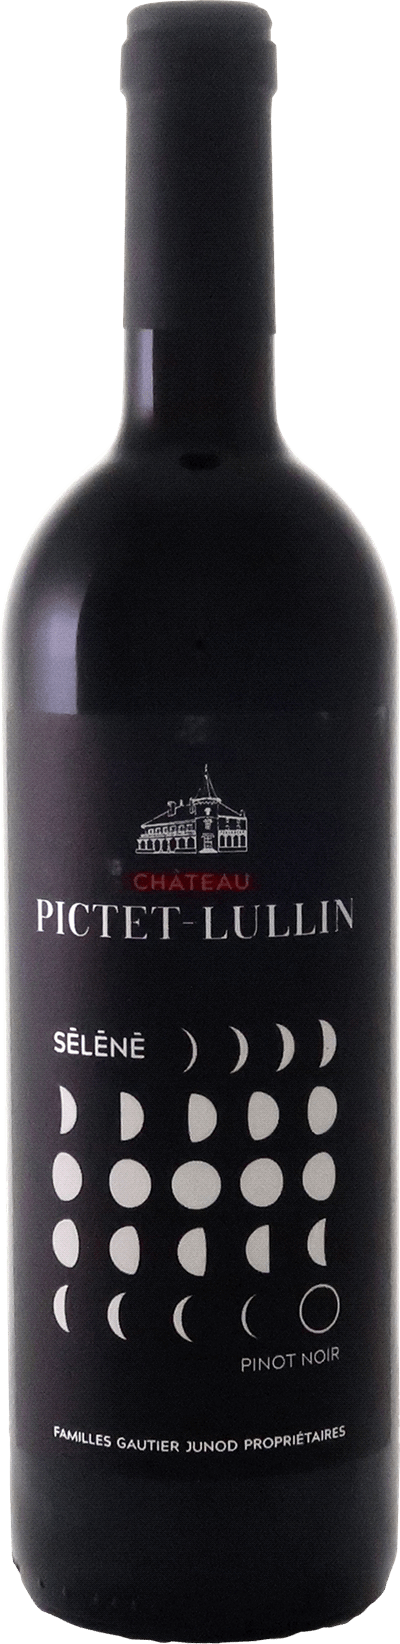 Château Pictet-Lullin Pinot Noir Grand Cru